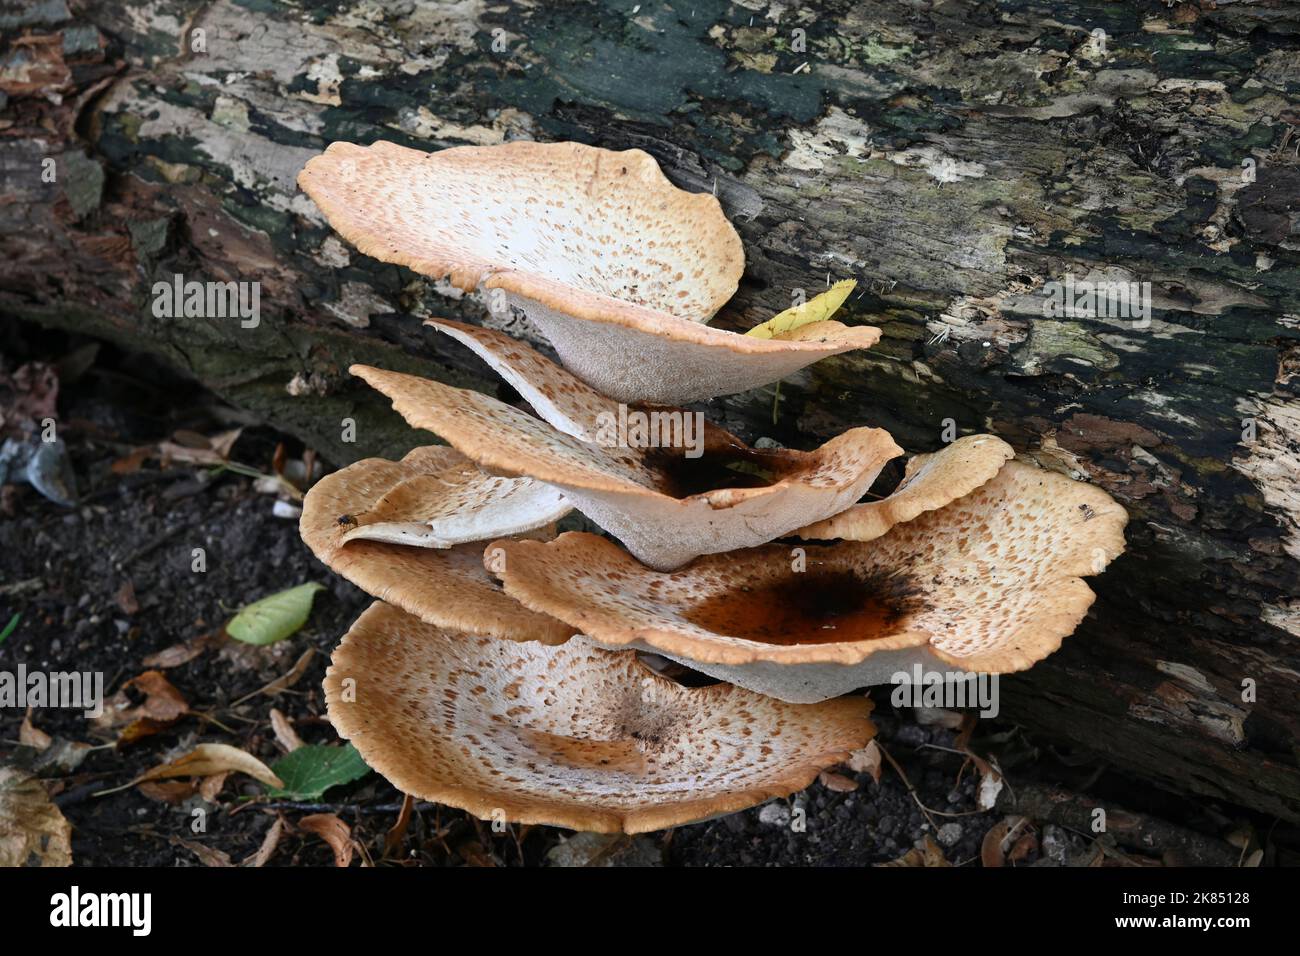 Dryad's Saddle - Polyporus squamosus  Large Bracket Fungi on log Stock Photo